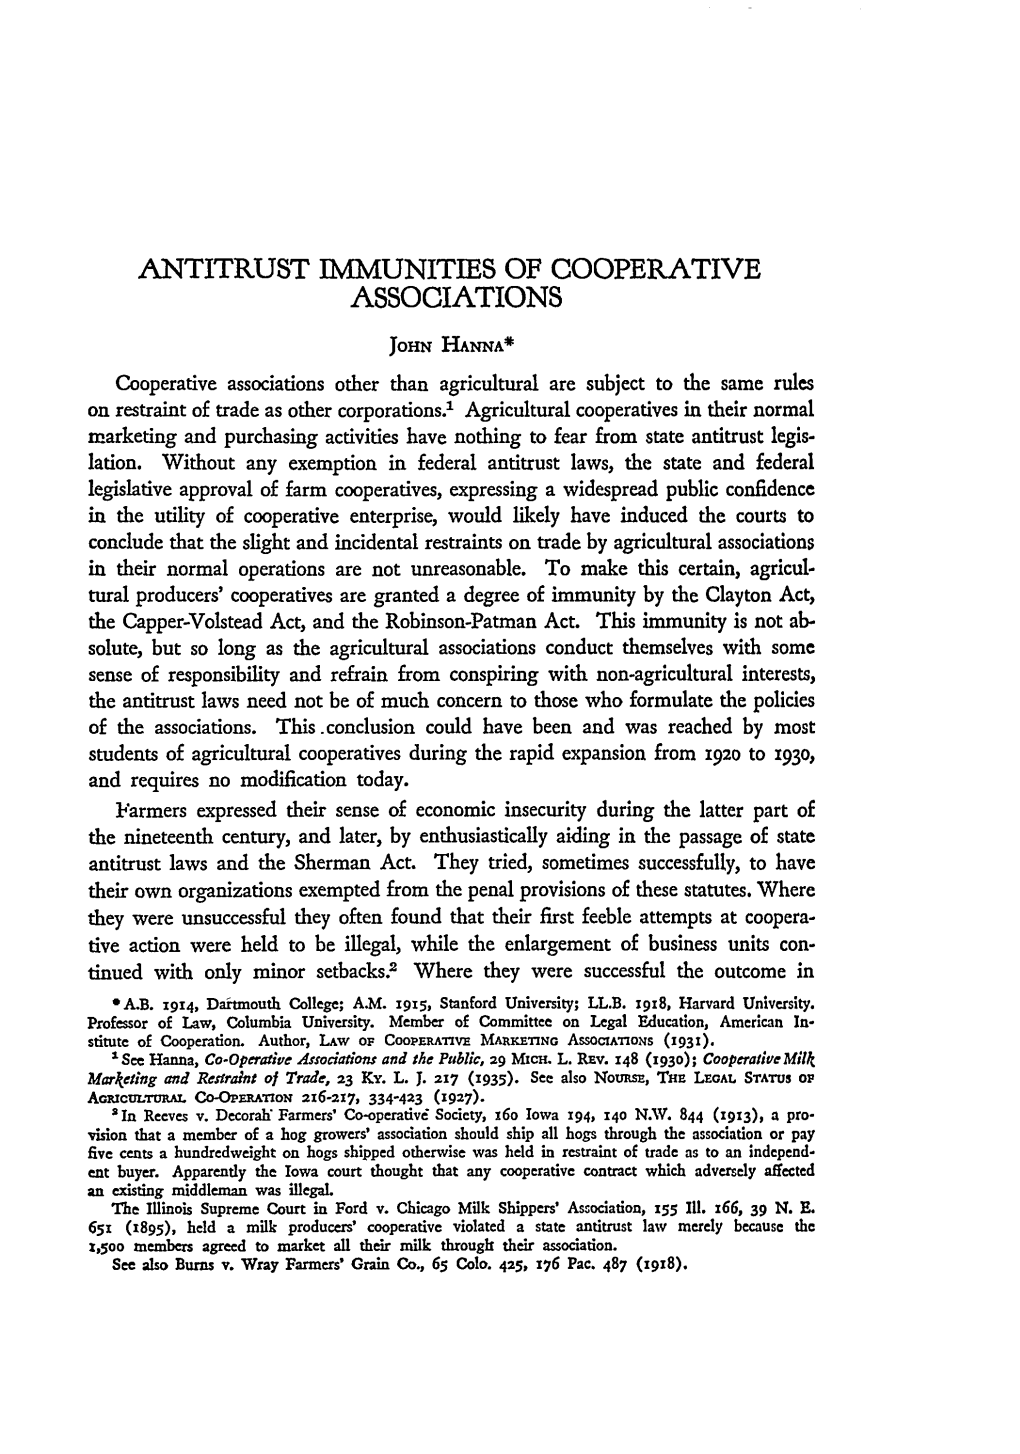 Antitrust Immunities of Cooperative Associations